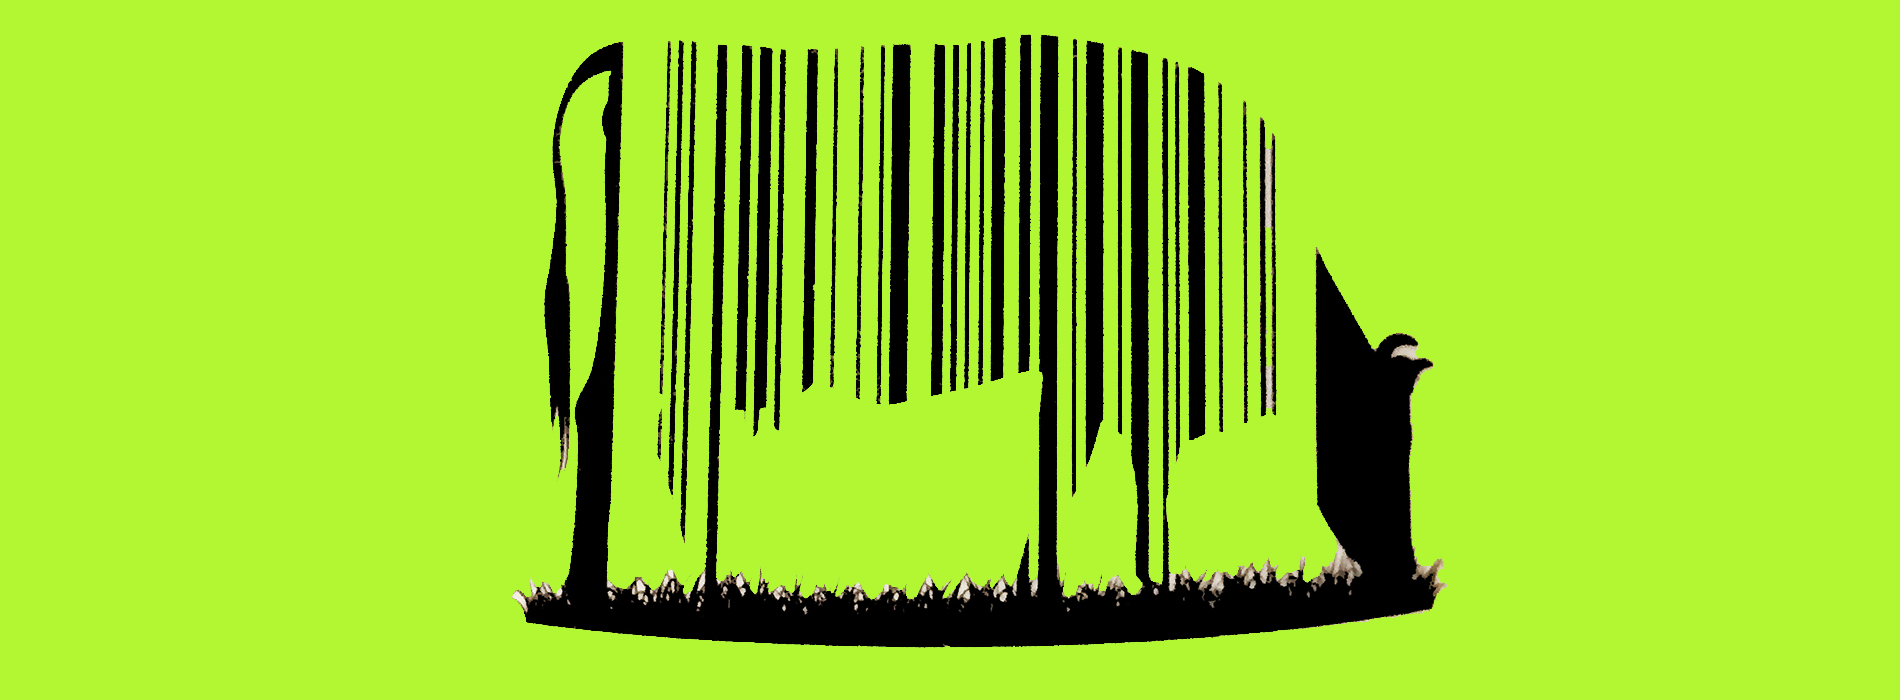 GRass-fed cow logo